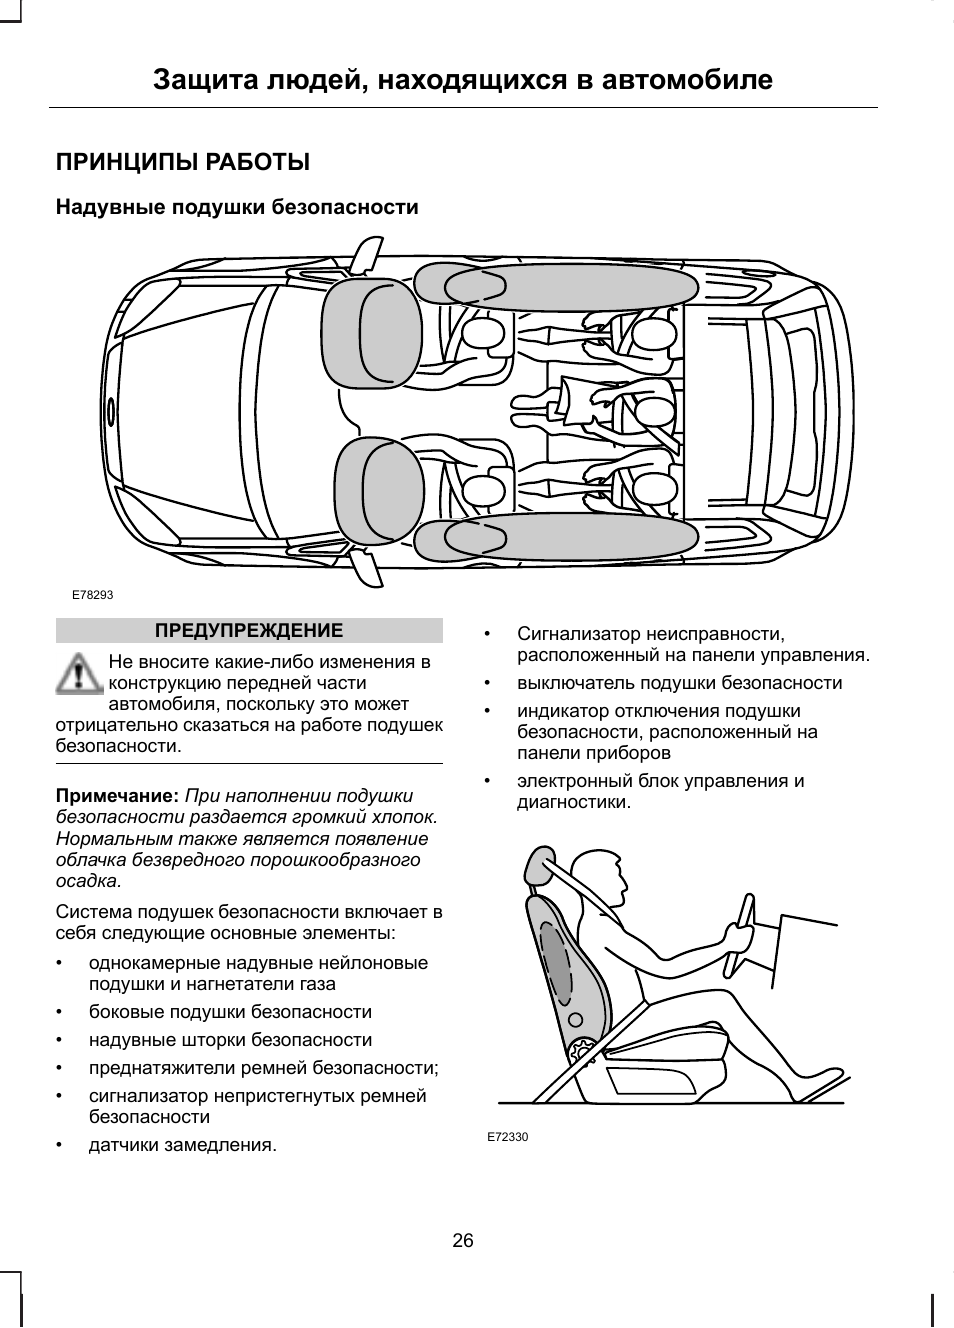 Автомобильная подушка безопасности: история появления